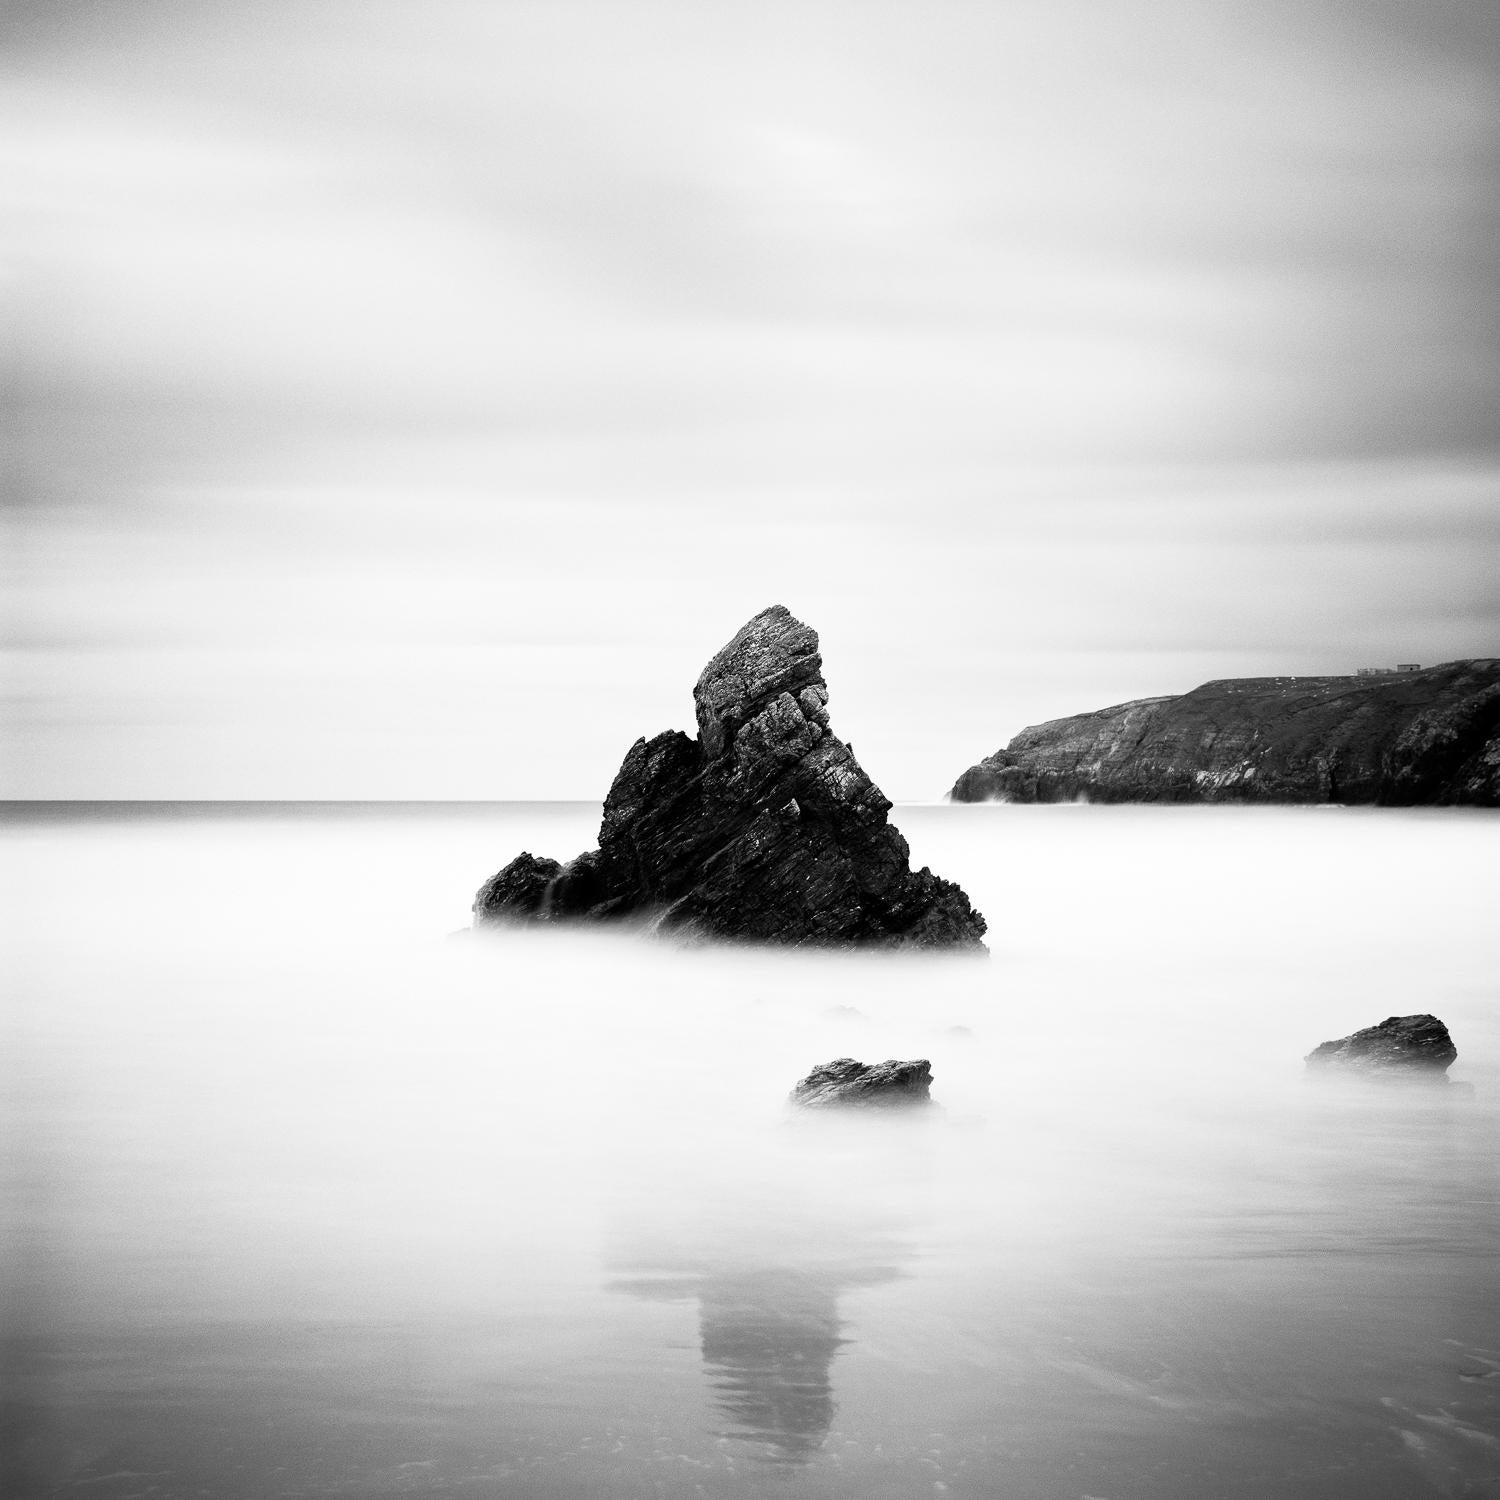 Stack am Meer, schottische Felsenküste, Schwarz-Weiß- analoge Fotografie, Holzrahmen – Photograph von Gerald Berghammer